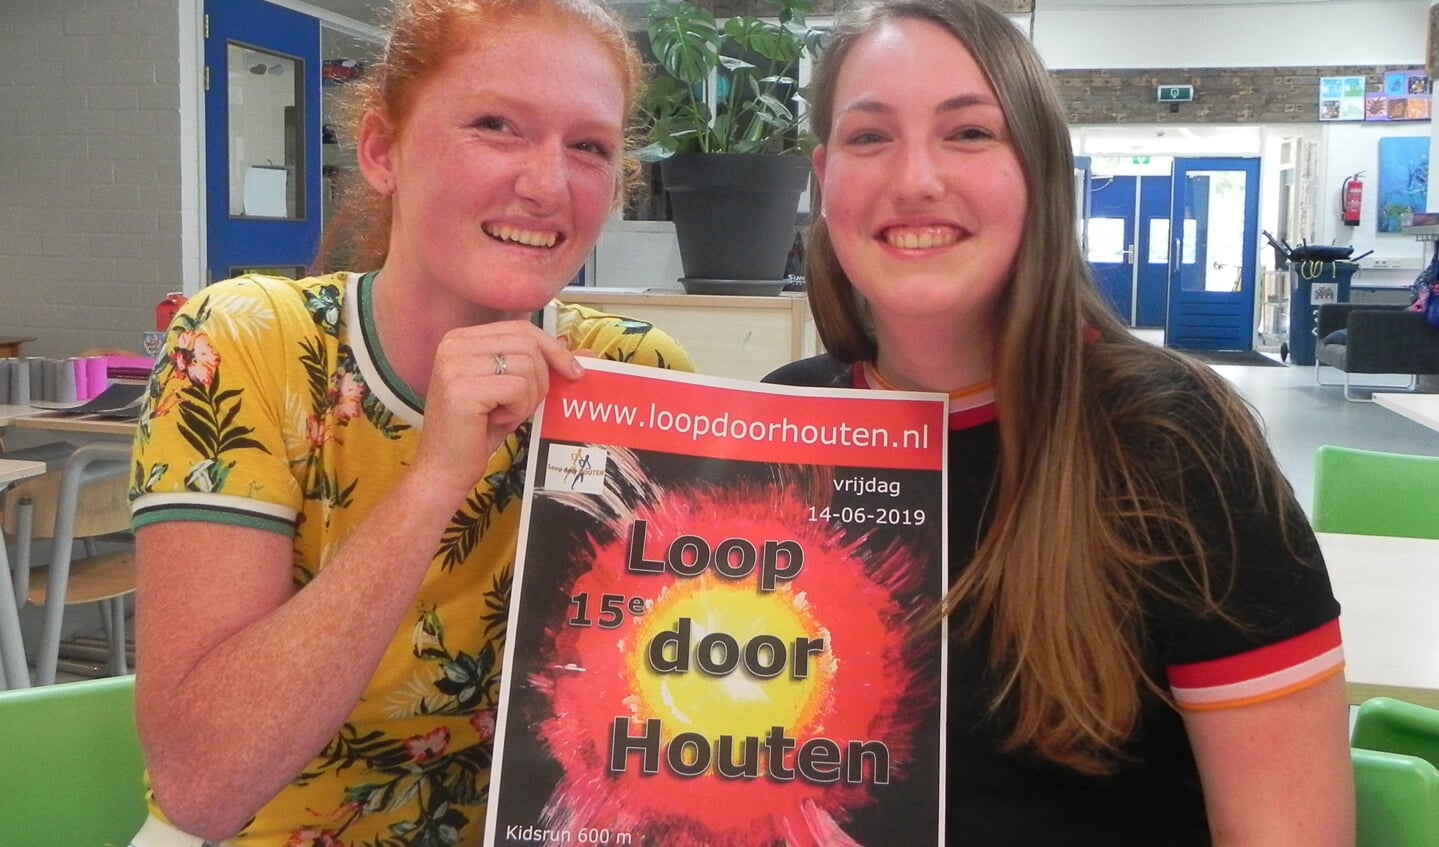 Conchètta Renssen en Charlotte Vermeeren zetten zich met hart en ziel in voor de Loop door Houten.